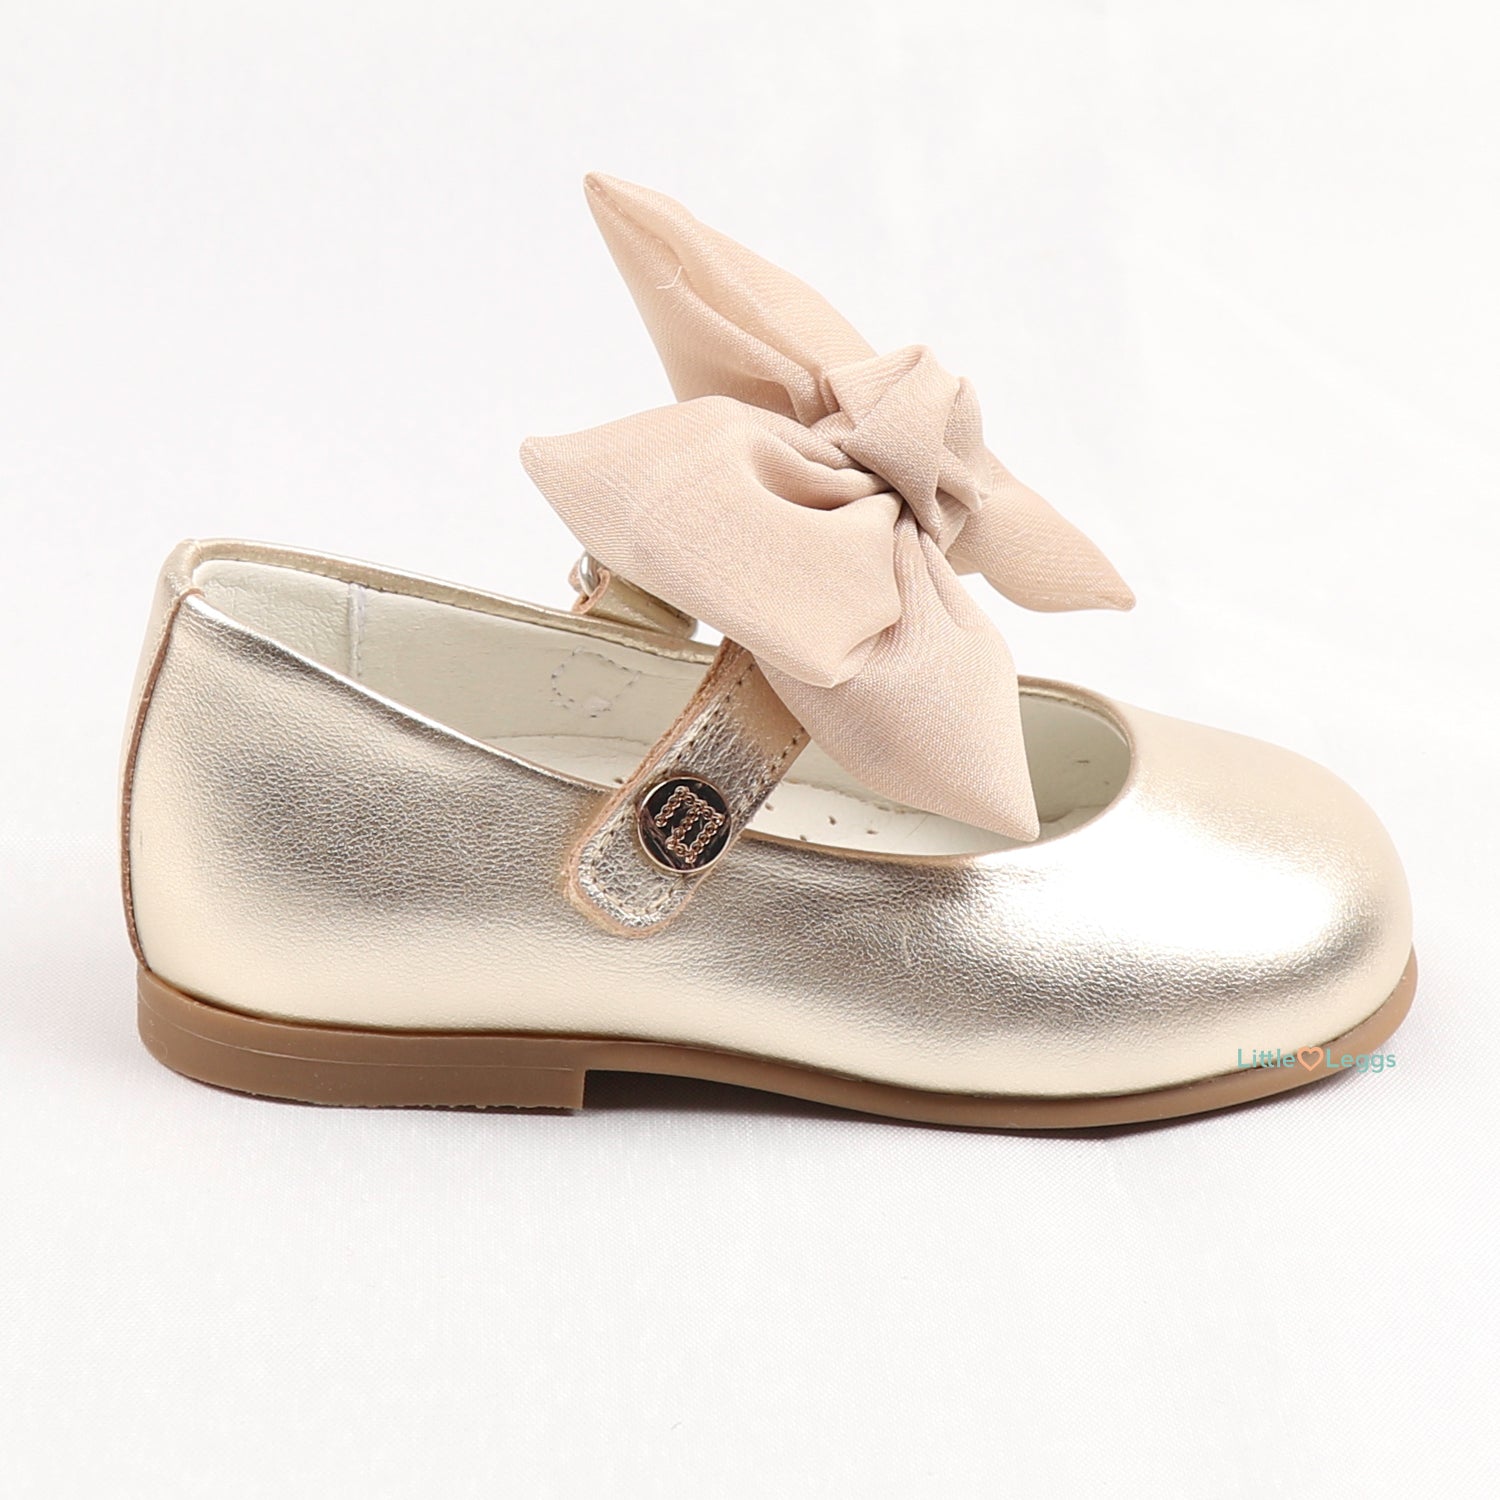 Gold Bow Mary Jane Shoe